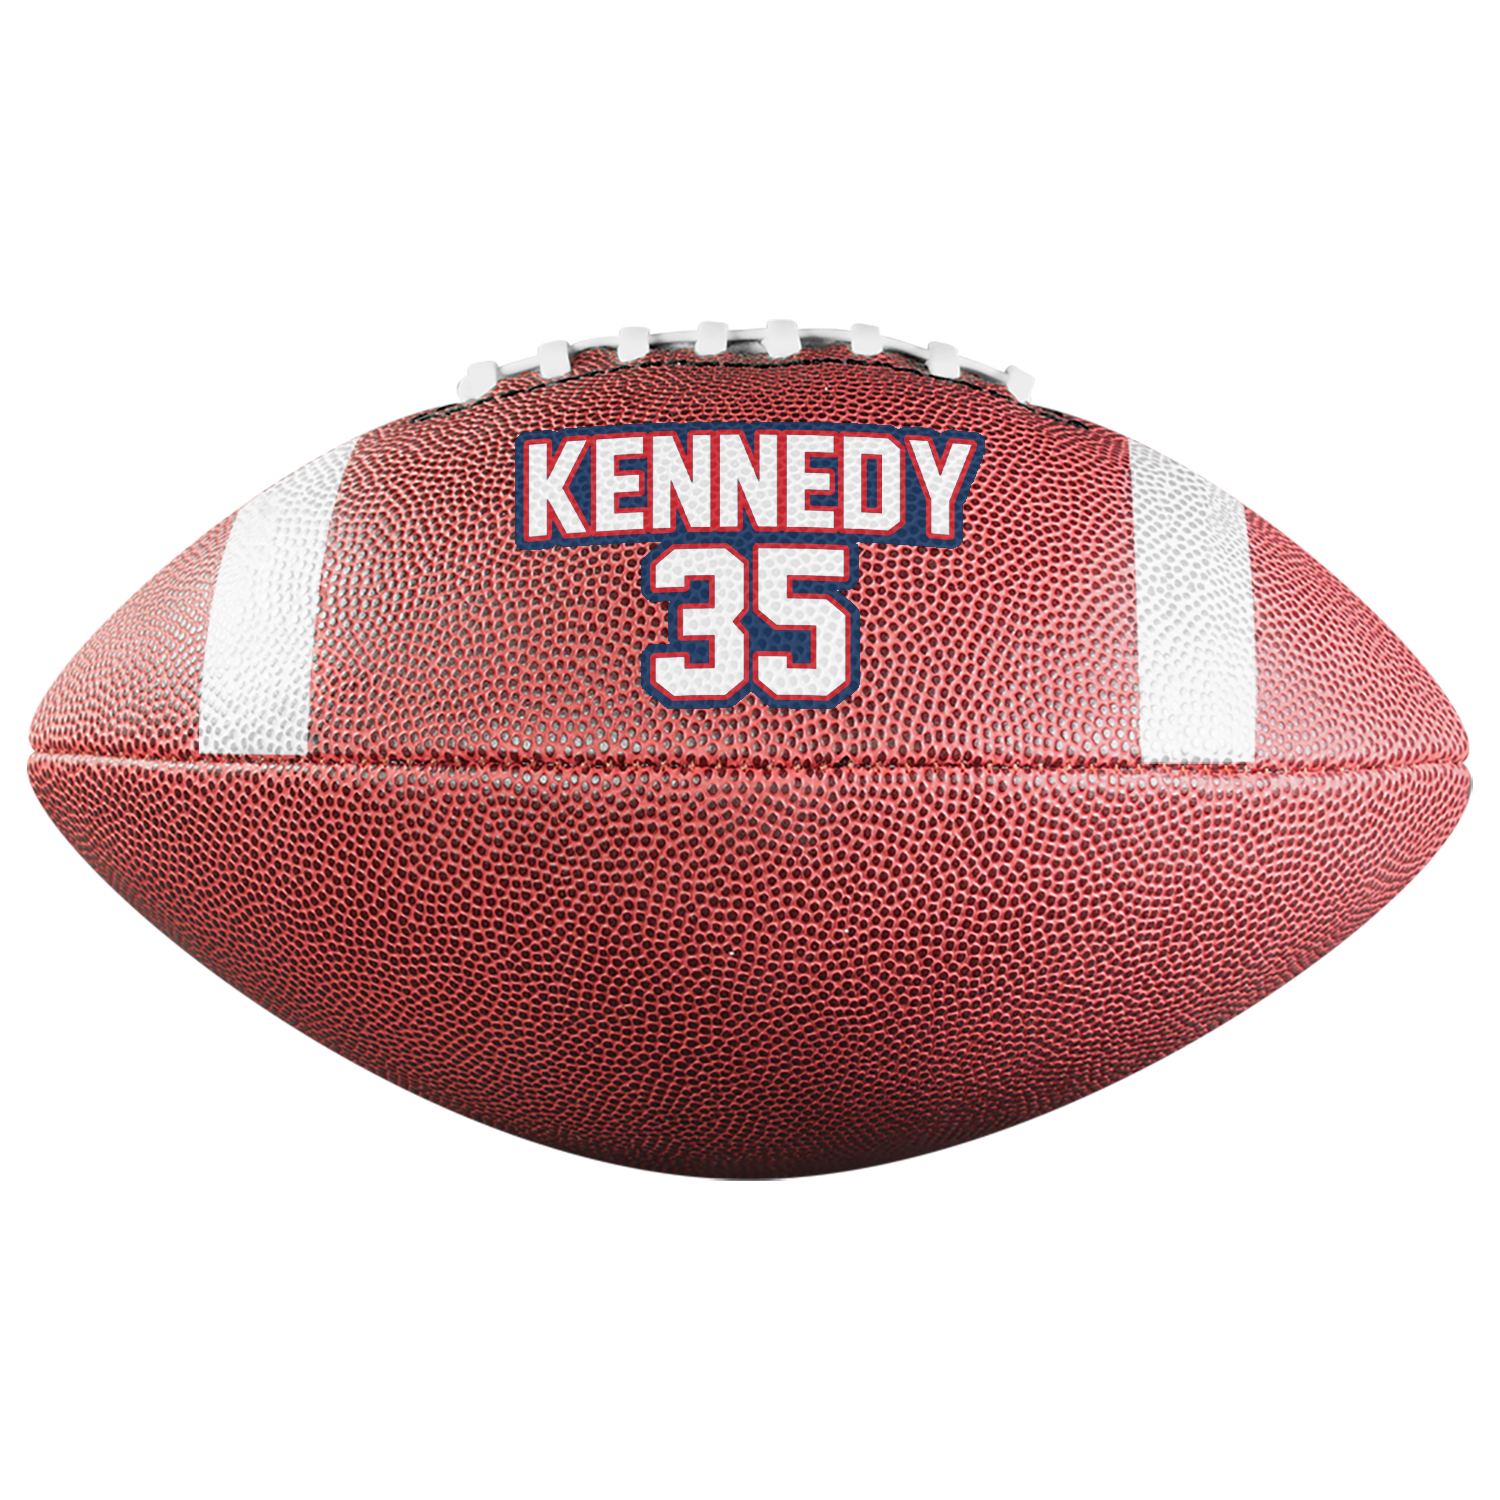 Kennedy 35 Football